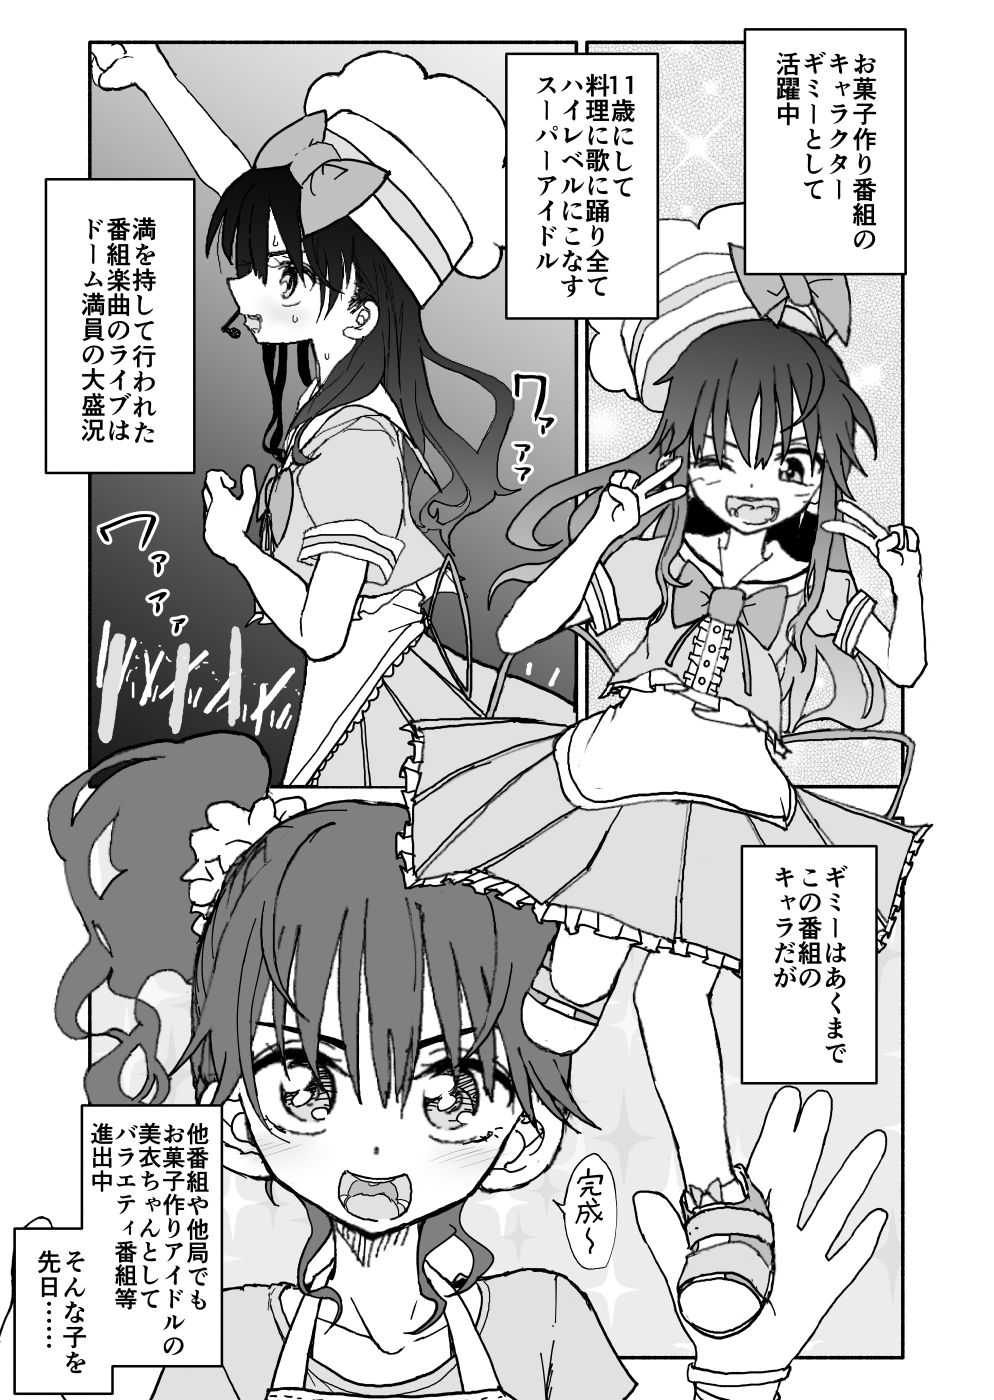 [Futotta Obasan] Okashi Tsukuri Idol ☆ Gimi ! Ecchi na Himitsu no Tokkun manga page 7 full